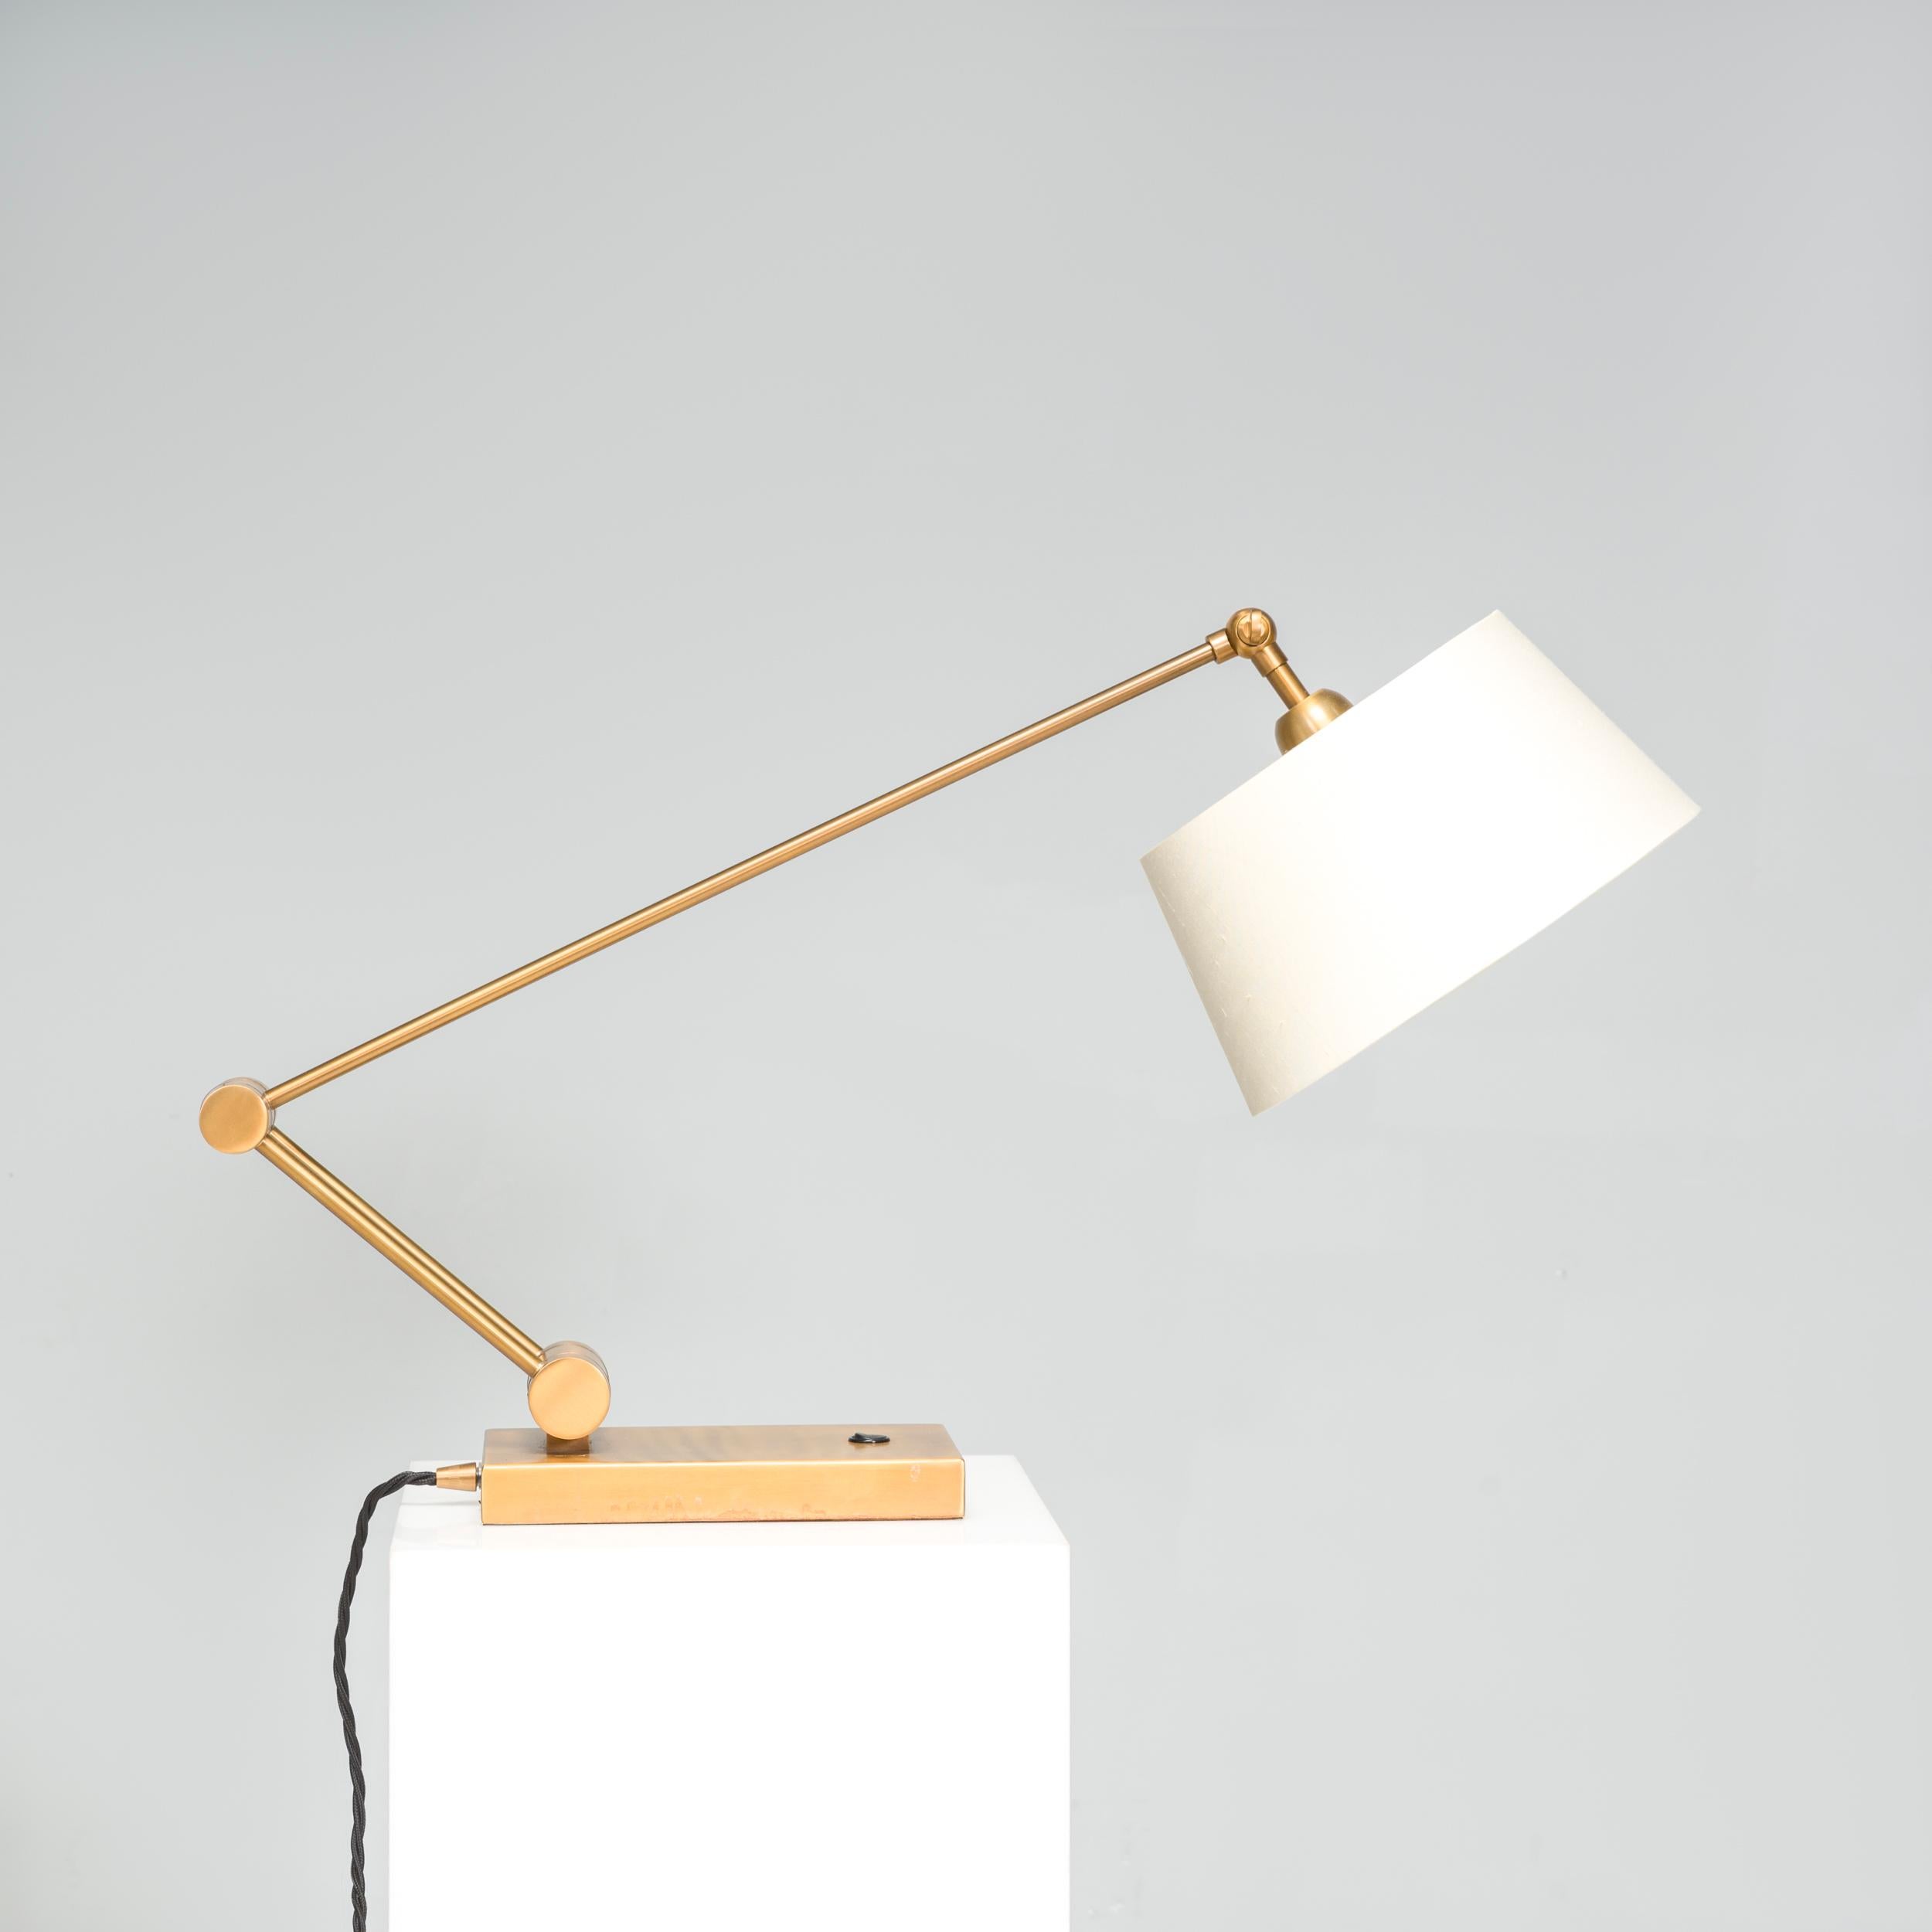 Cette lampe de bureau en laiton de Heathfield & Co présente un design impressionnant qui rehausserait n'importe quel espace de vie ou chambre à coucher. La forme angulaire de son bras, ponctuée d'une charnière arrondie, est contrebalancée par